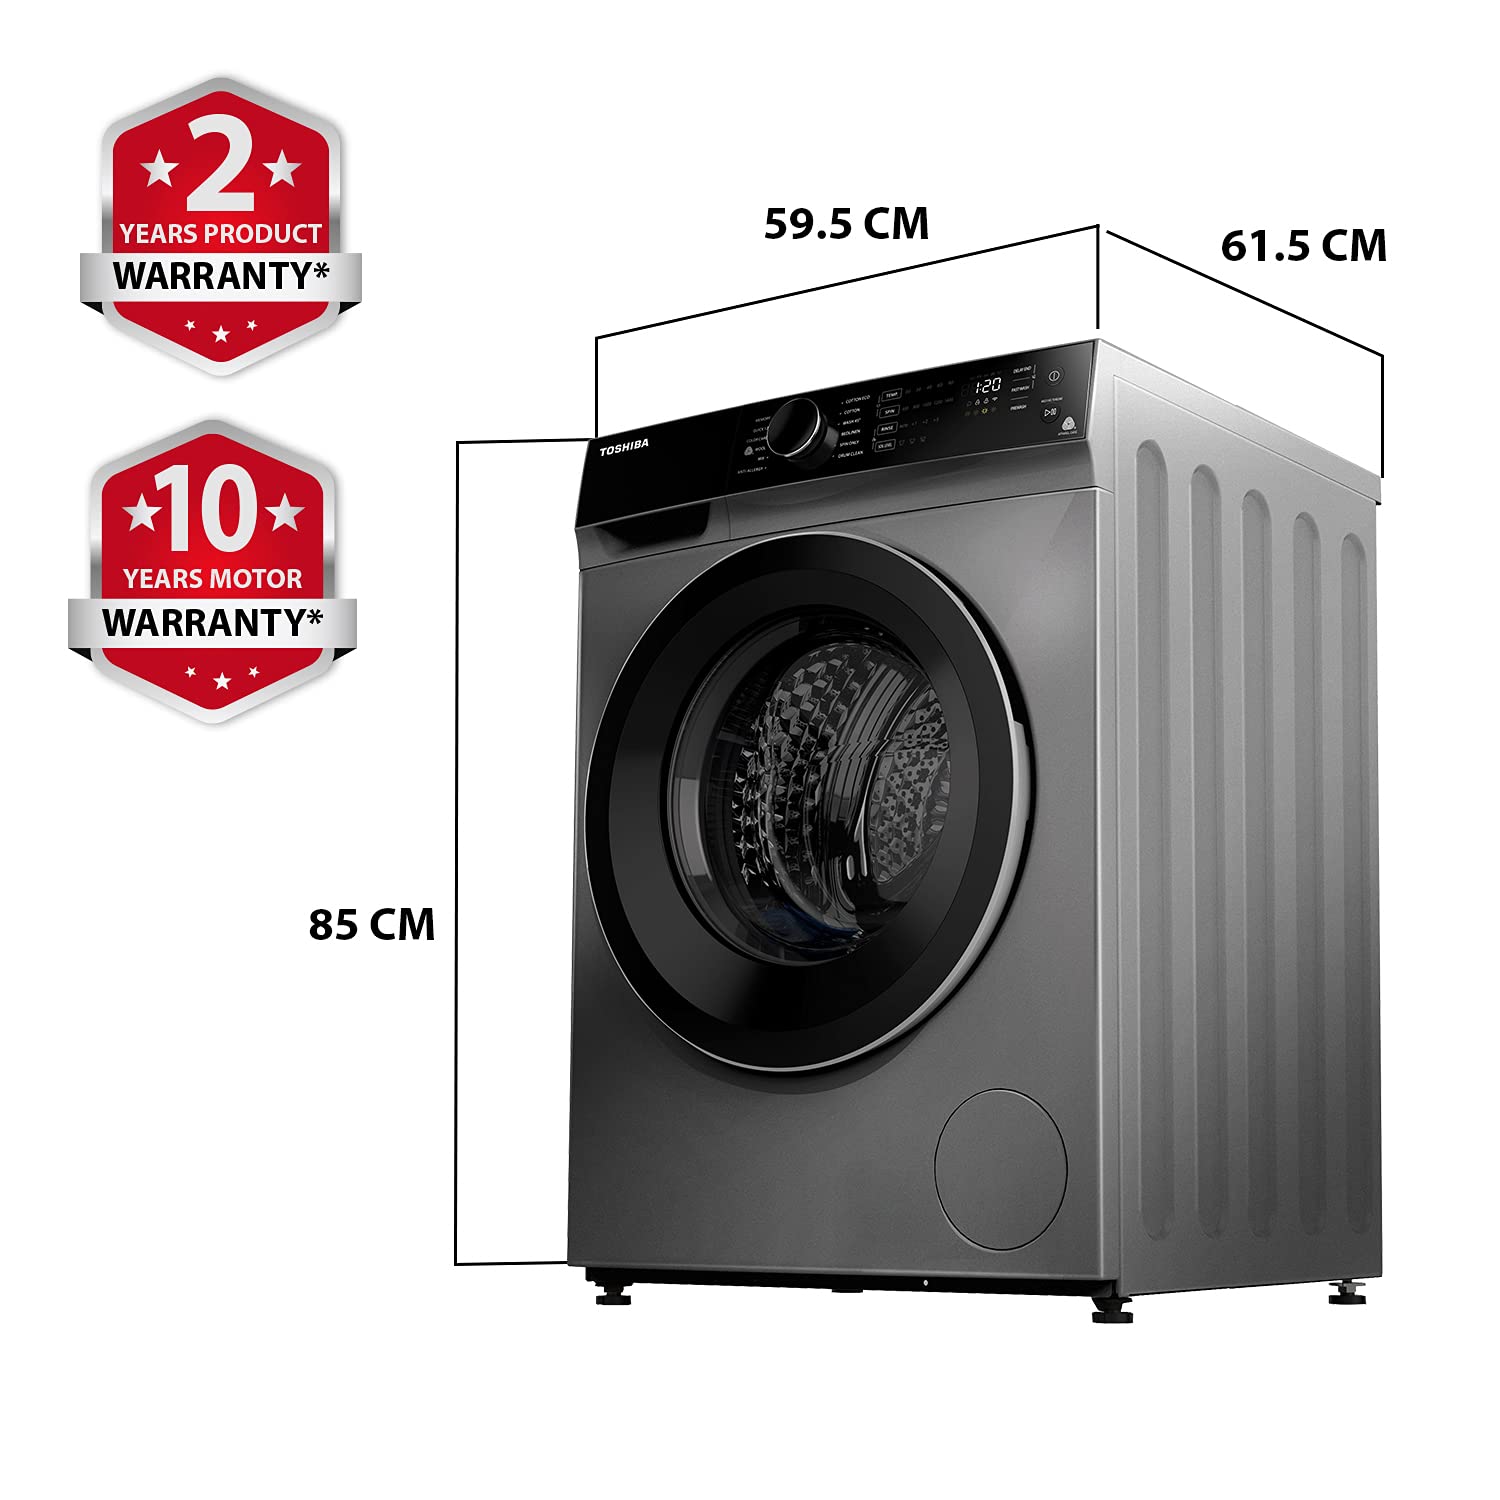 Amazon Deal: 100% कपड़े सुखाने वाले ये Washer Dryer डील में नॉर्मल वॉशिंग मशीन की कीमत में मिल रहे हैं!